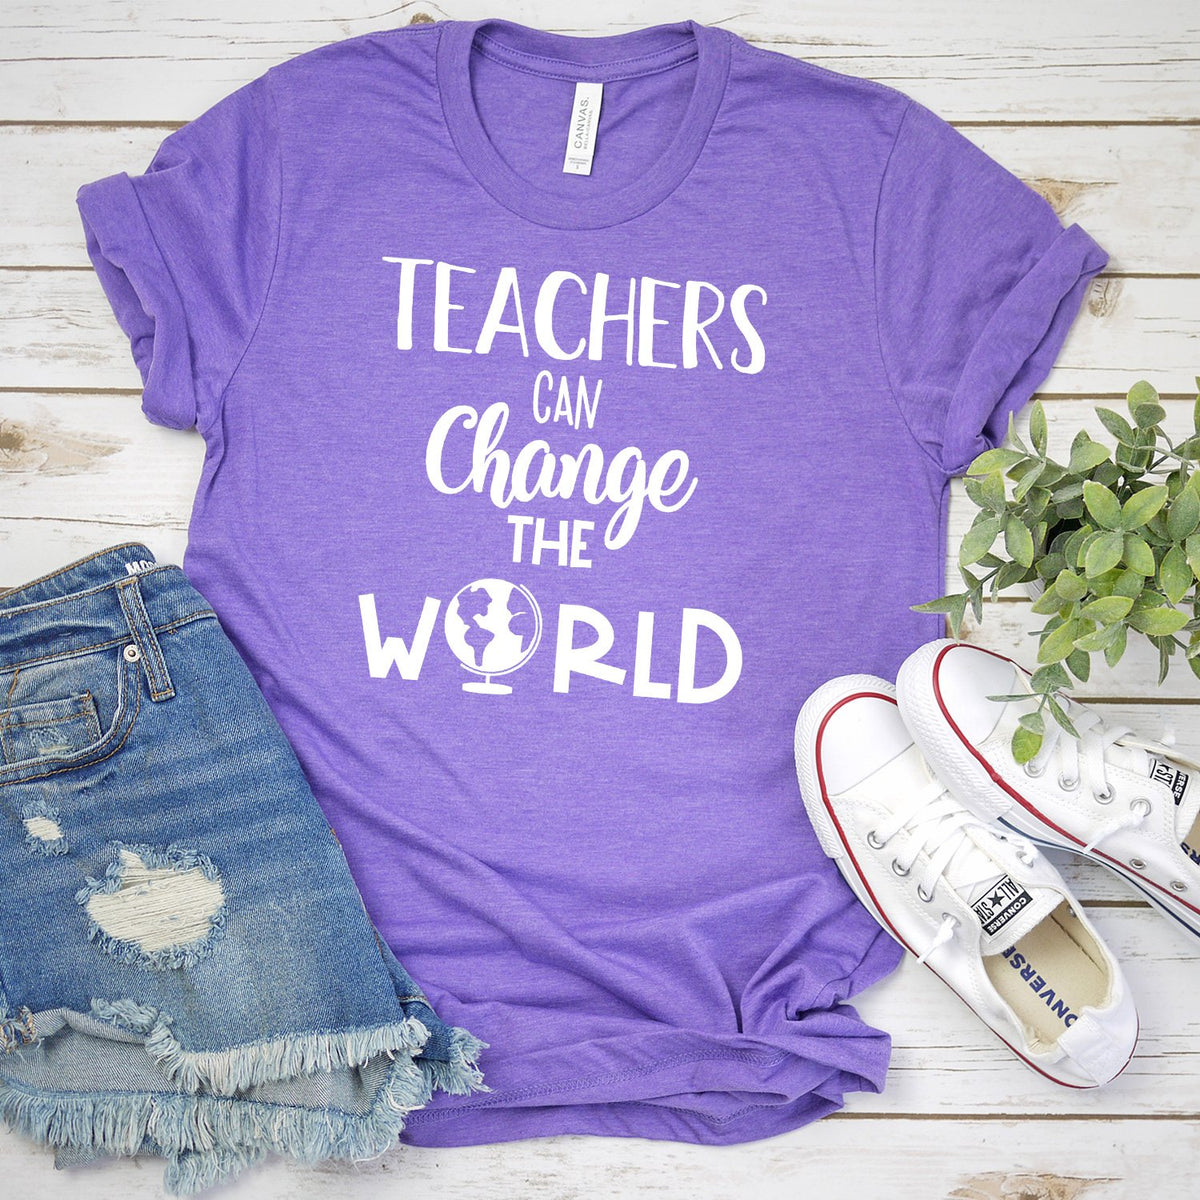 Teachers Can Change the World - Short Sleeve Tee Shirt